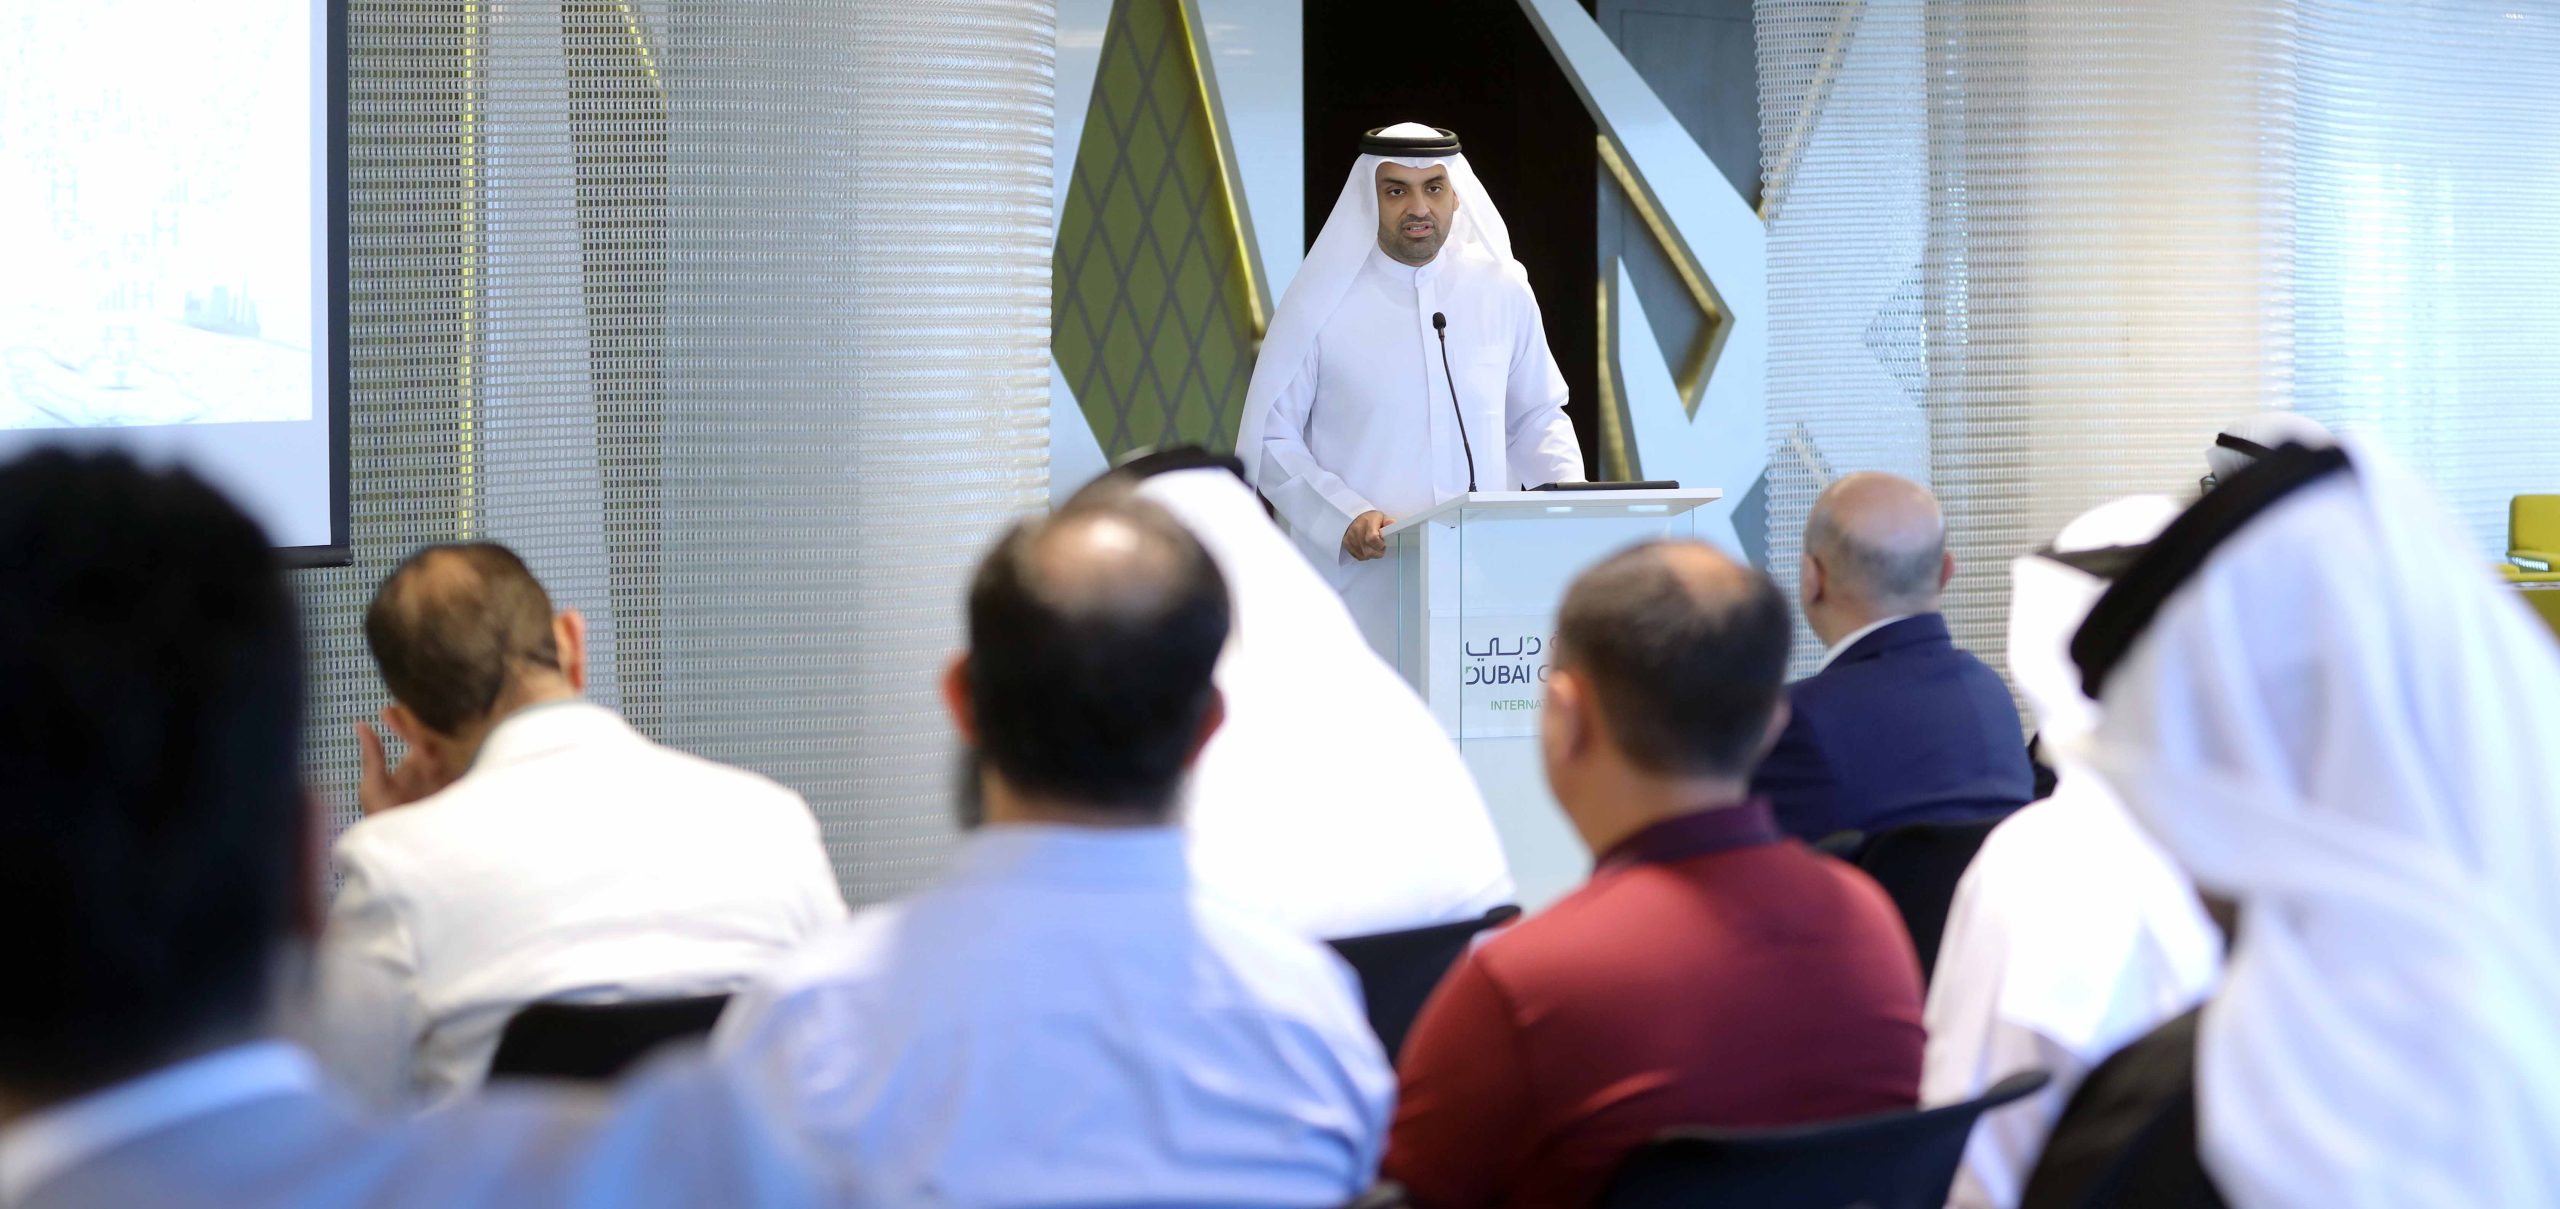 غرفة دبي العالمية تدشن مبادرة “آفاق جديدة للتوسع الخارجي” بتنظيم بعثة تجارية إلى آسيا الوسطى